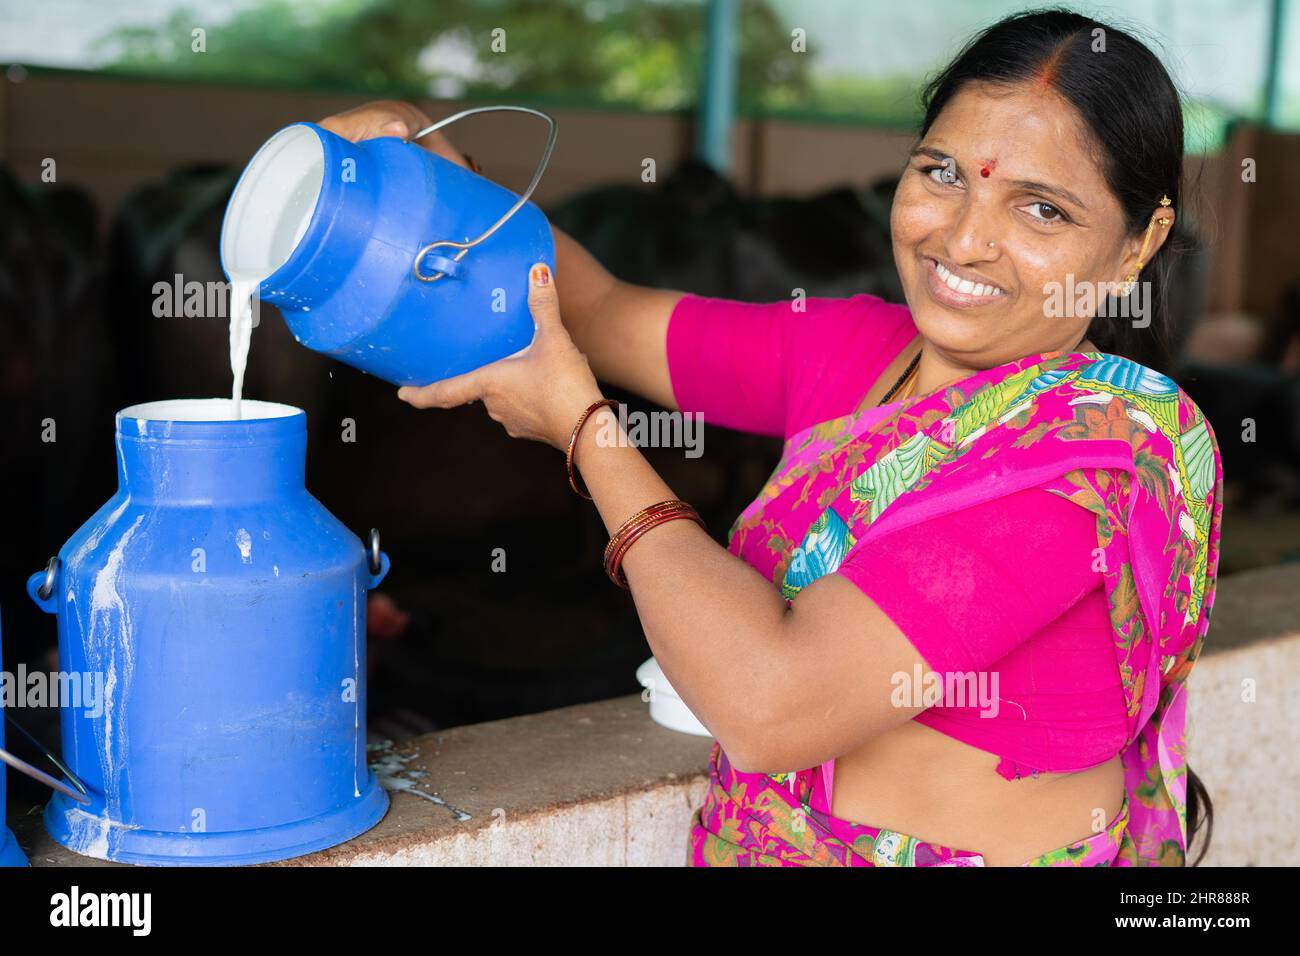 Glücklich lächelnde indische Frau beschäftigt, indem sie Milch in Behälter gießen, während sie die Kamera betrachtet - Konzept der Milchproduktion, Agri-Geschäft, Wachstum und Stockfoto